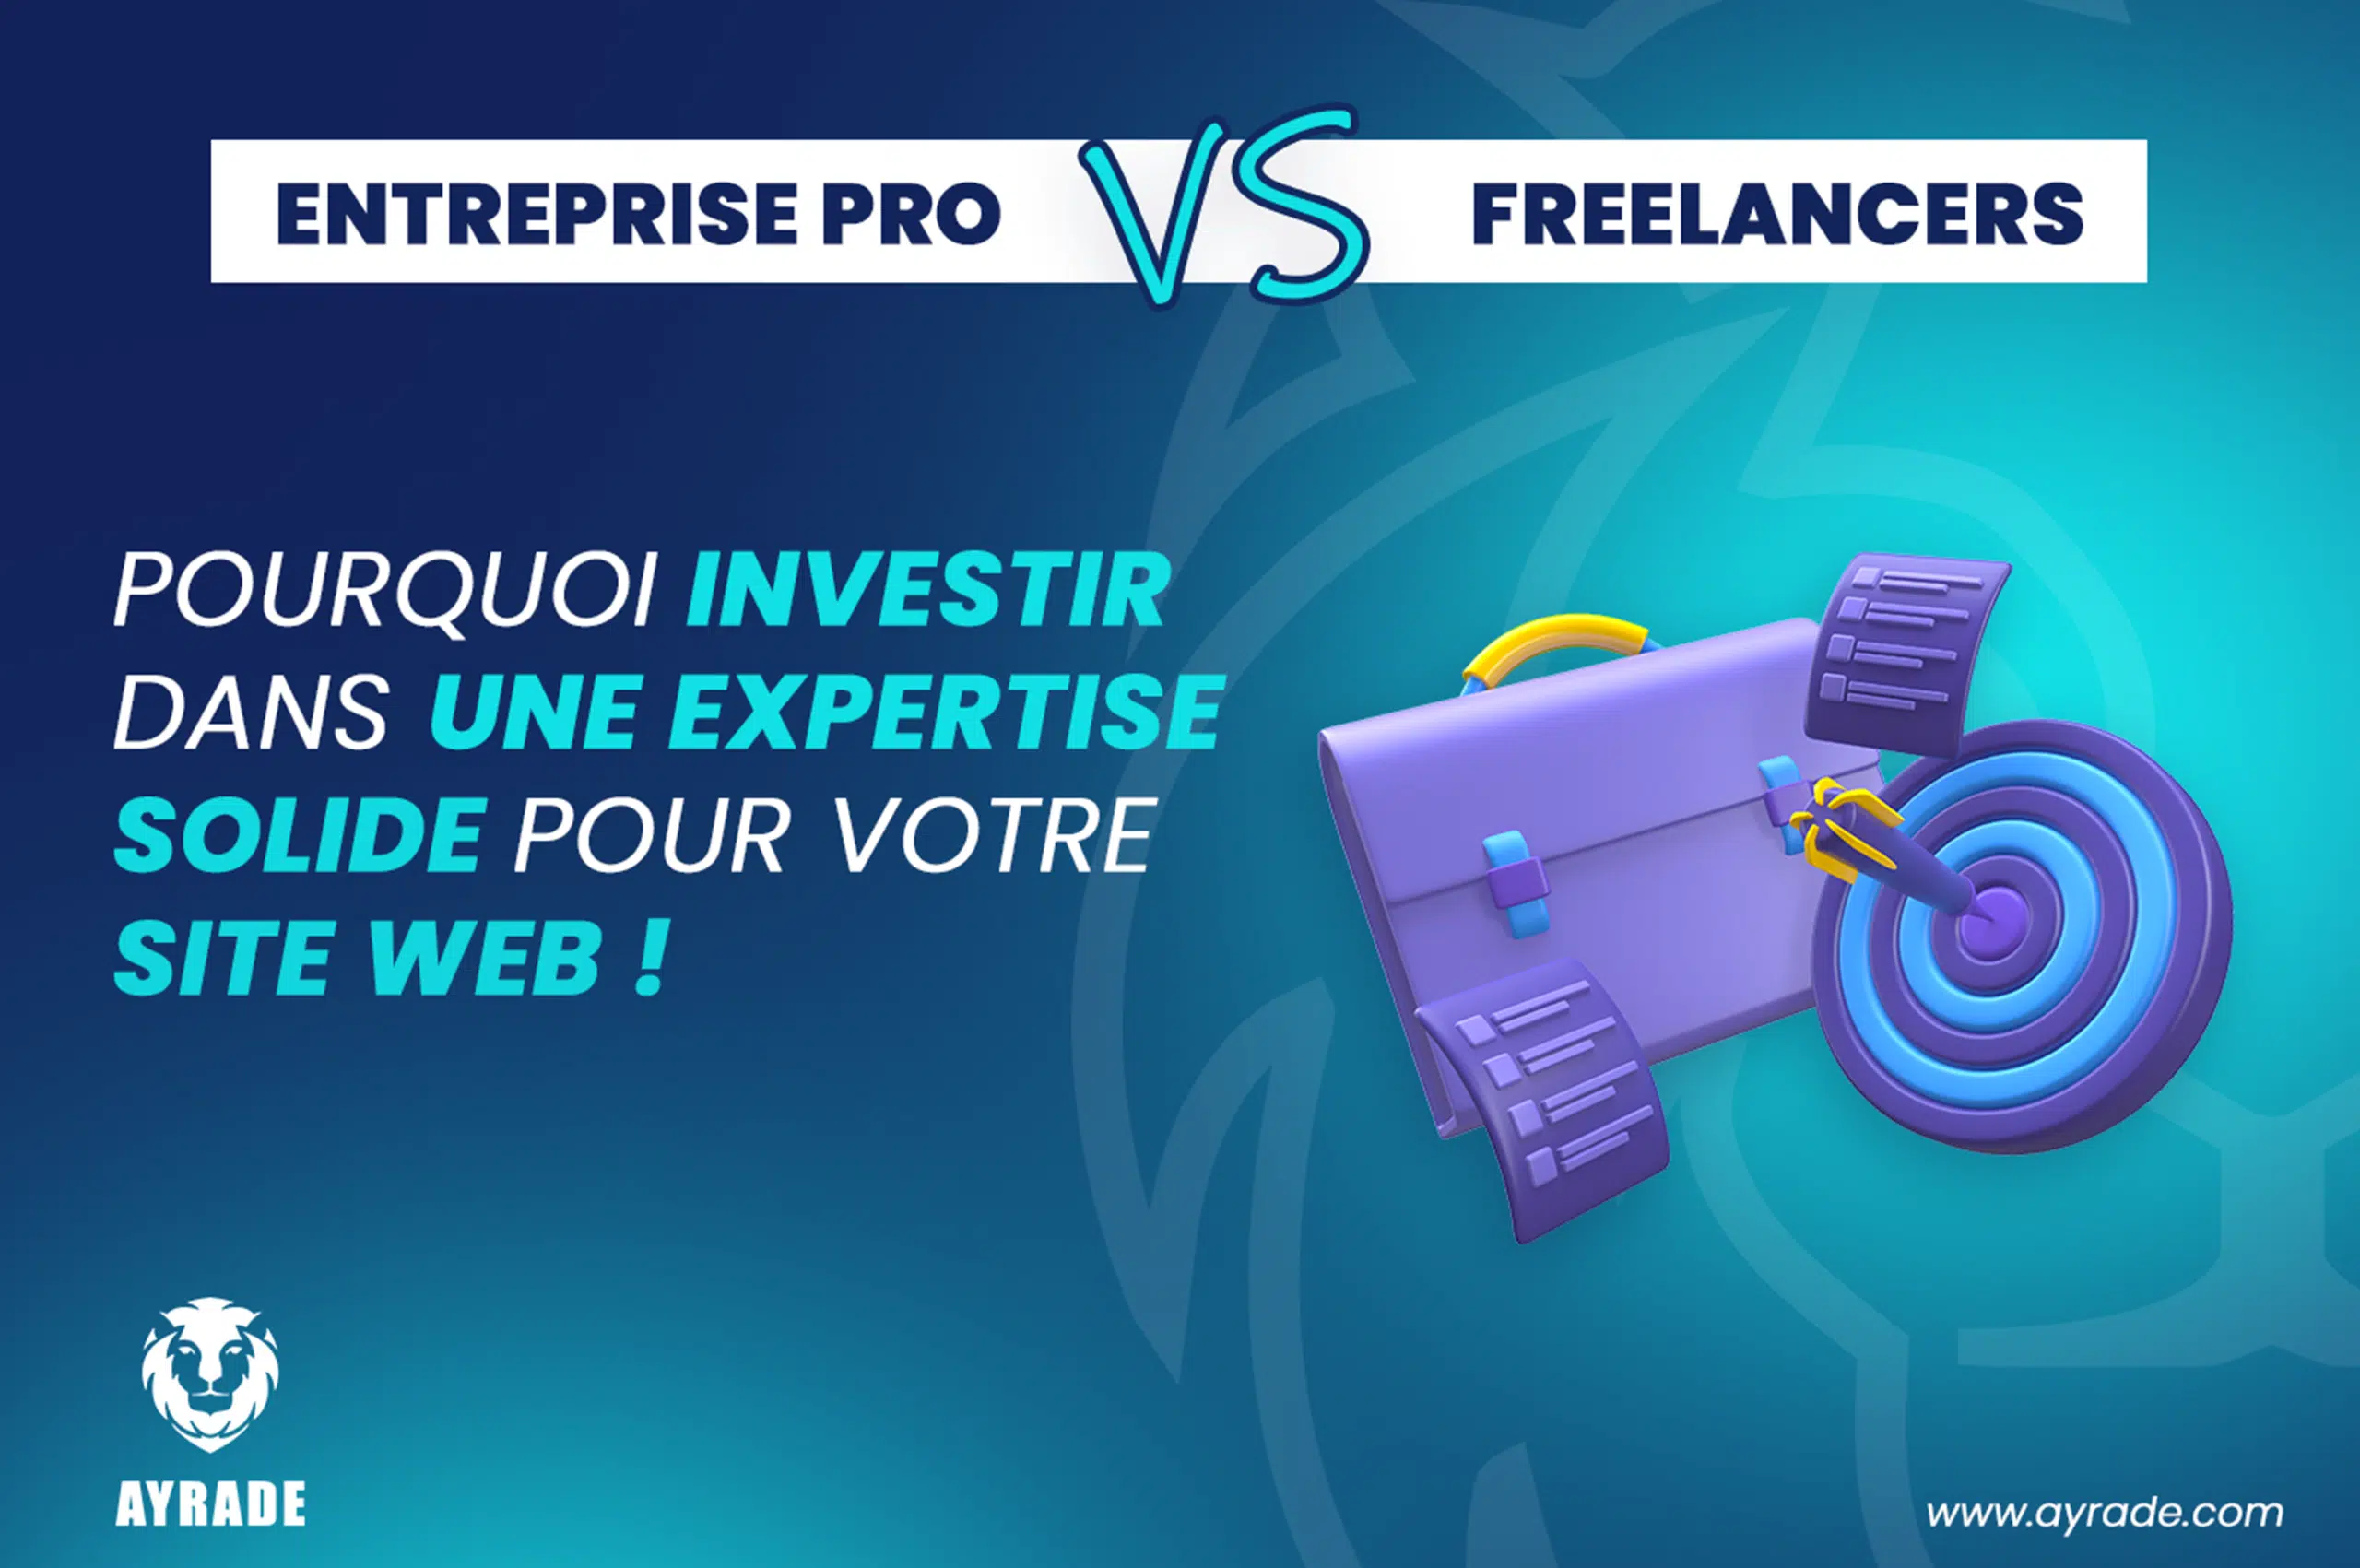 Entreprise Pro vs. Freelancer : Pourquoi investir dans une expertise solide pour votre site web !